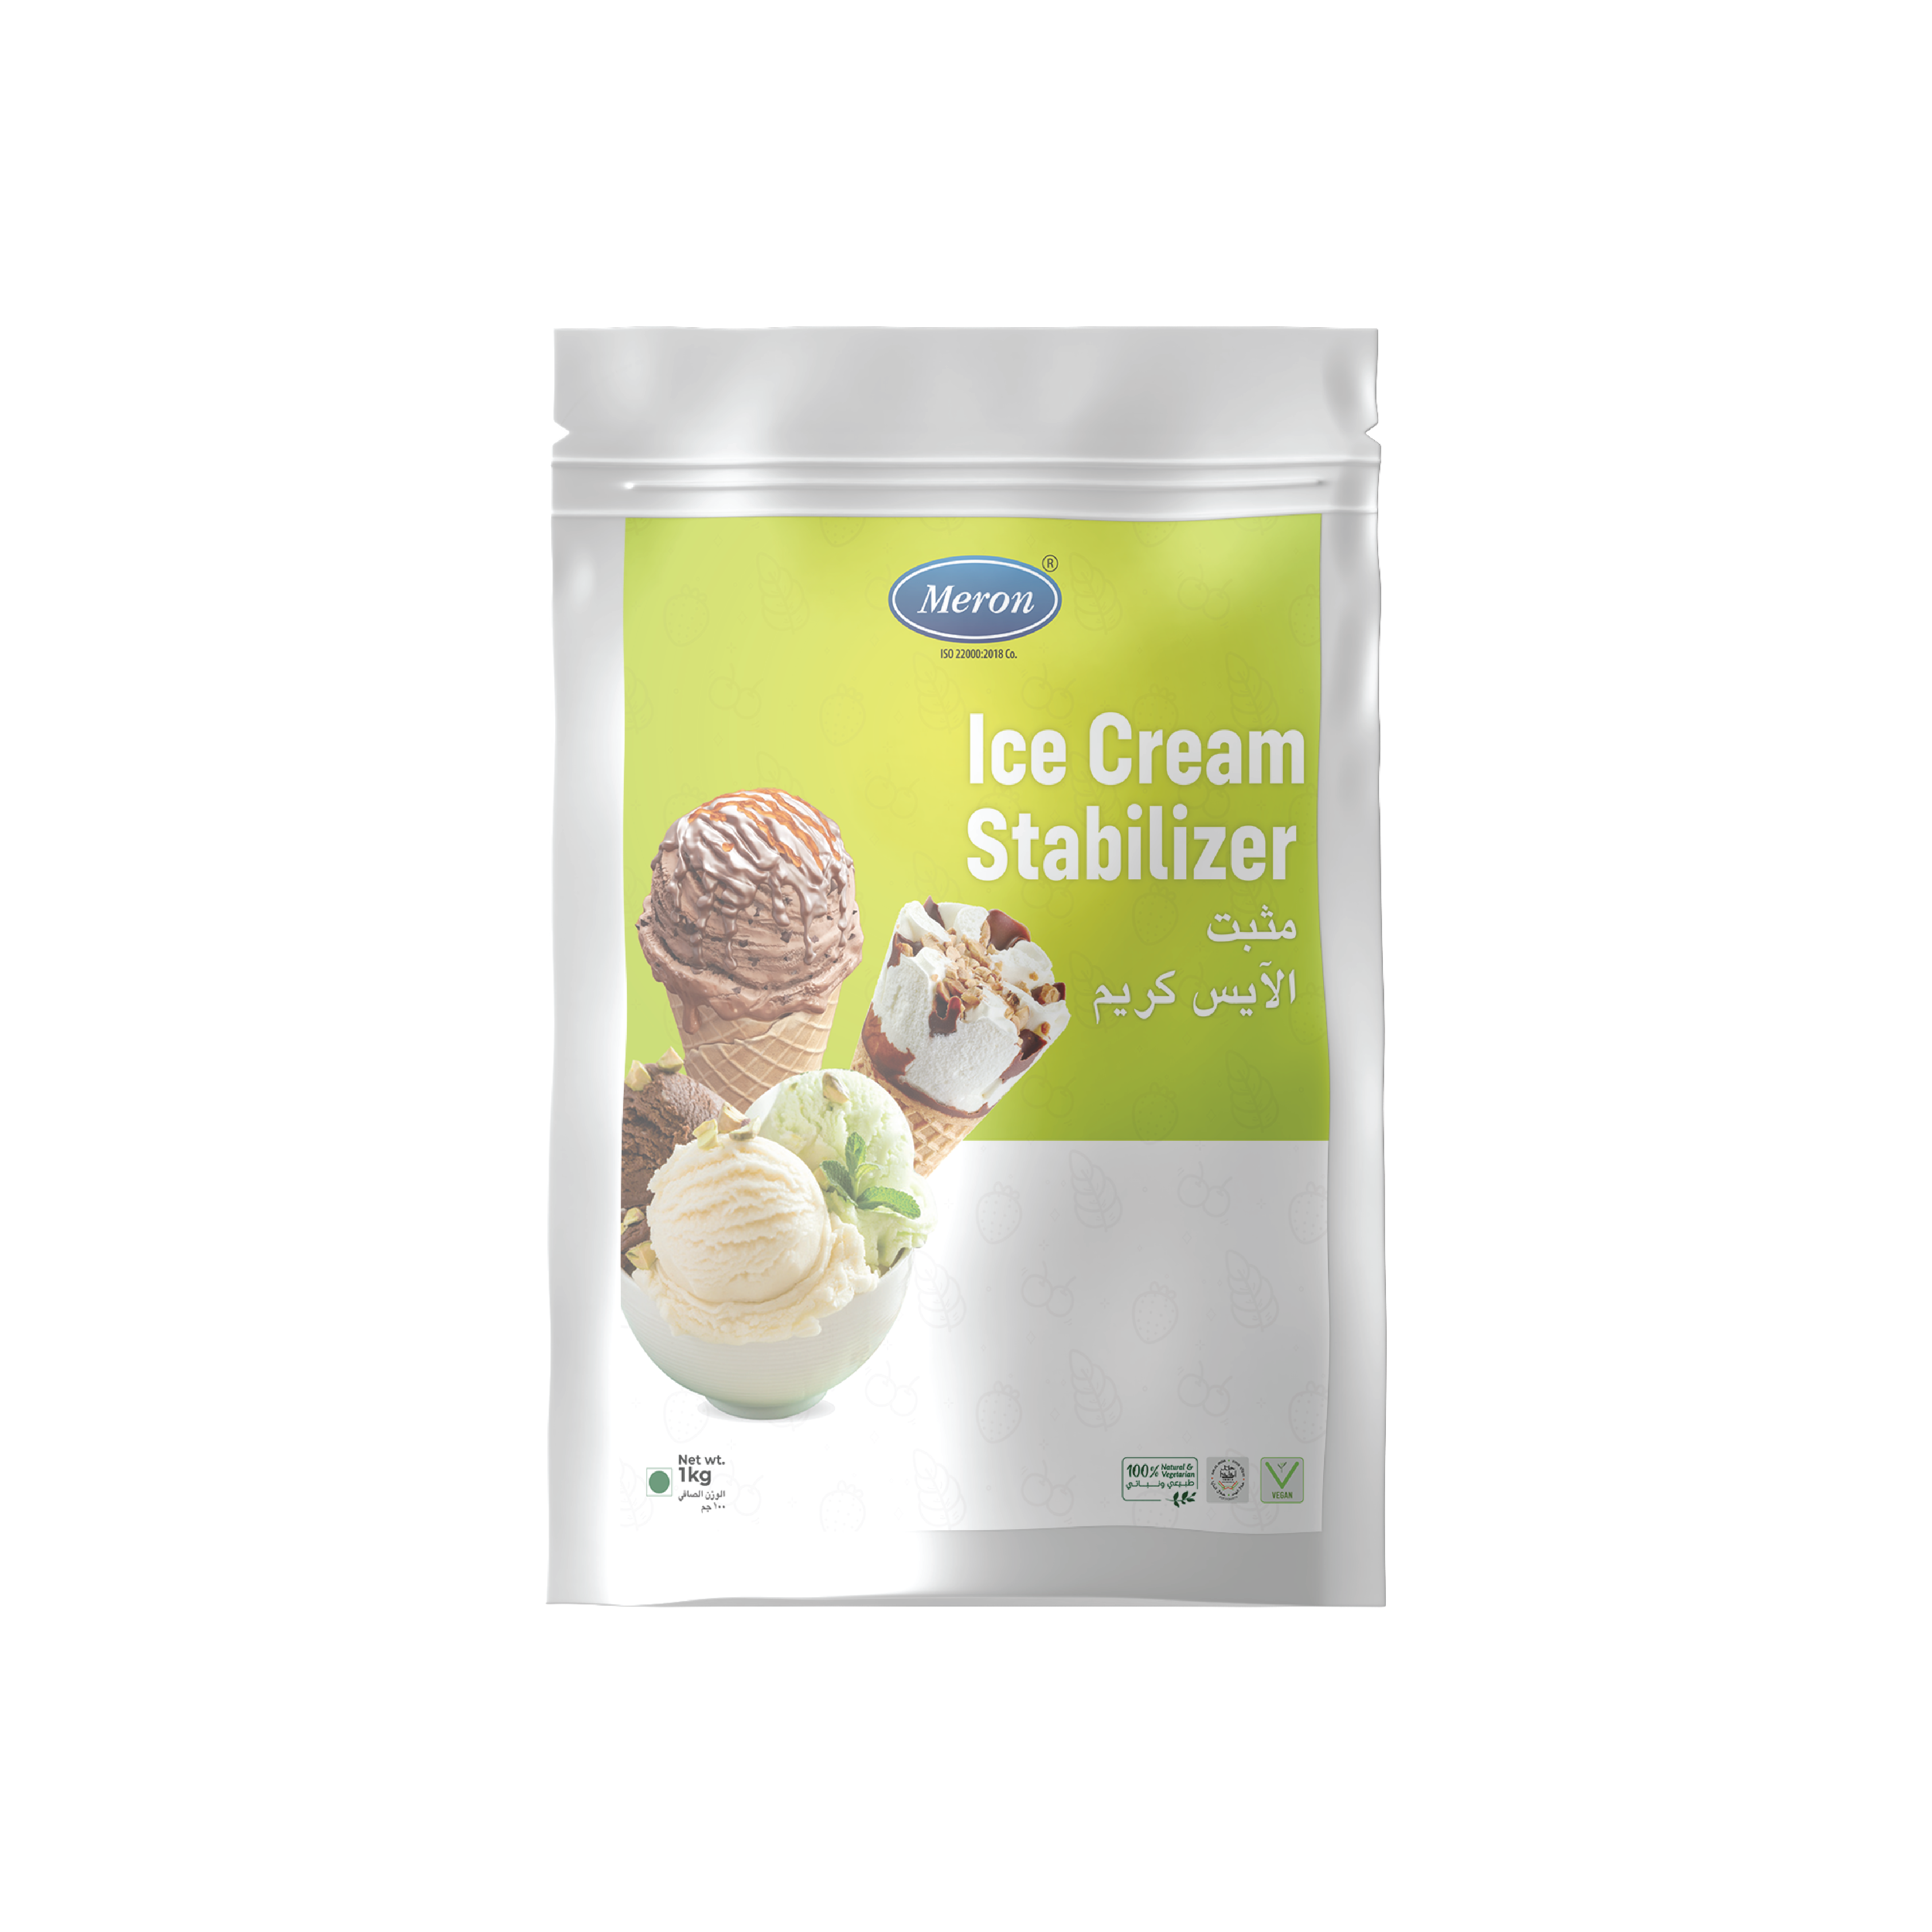 Avacream Ice Cream Stabilizer Mix (8 oz)